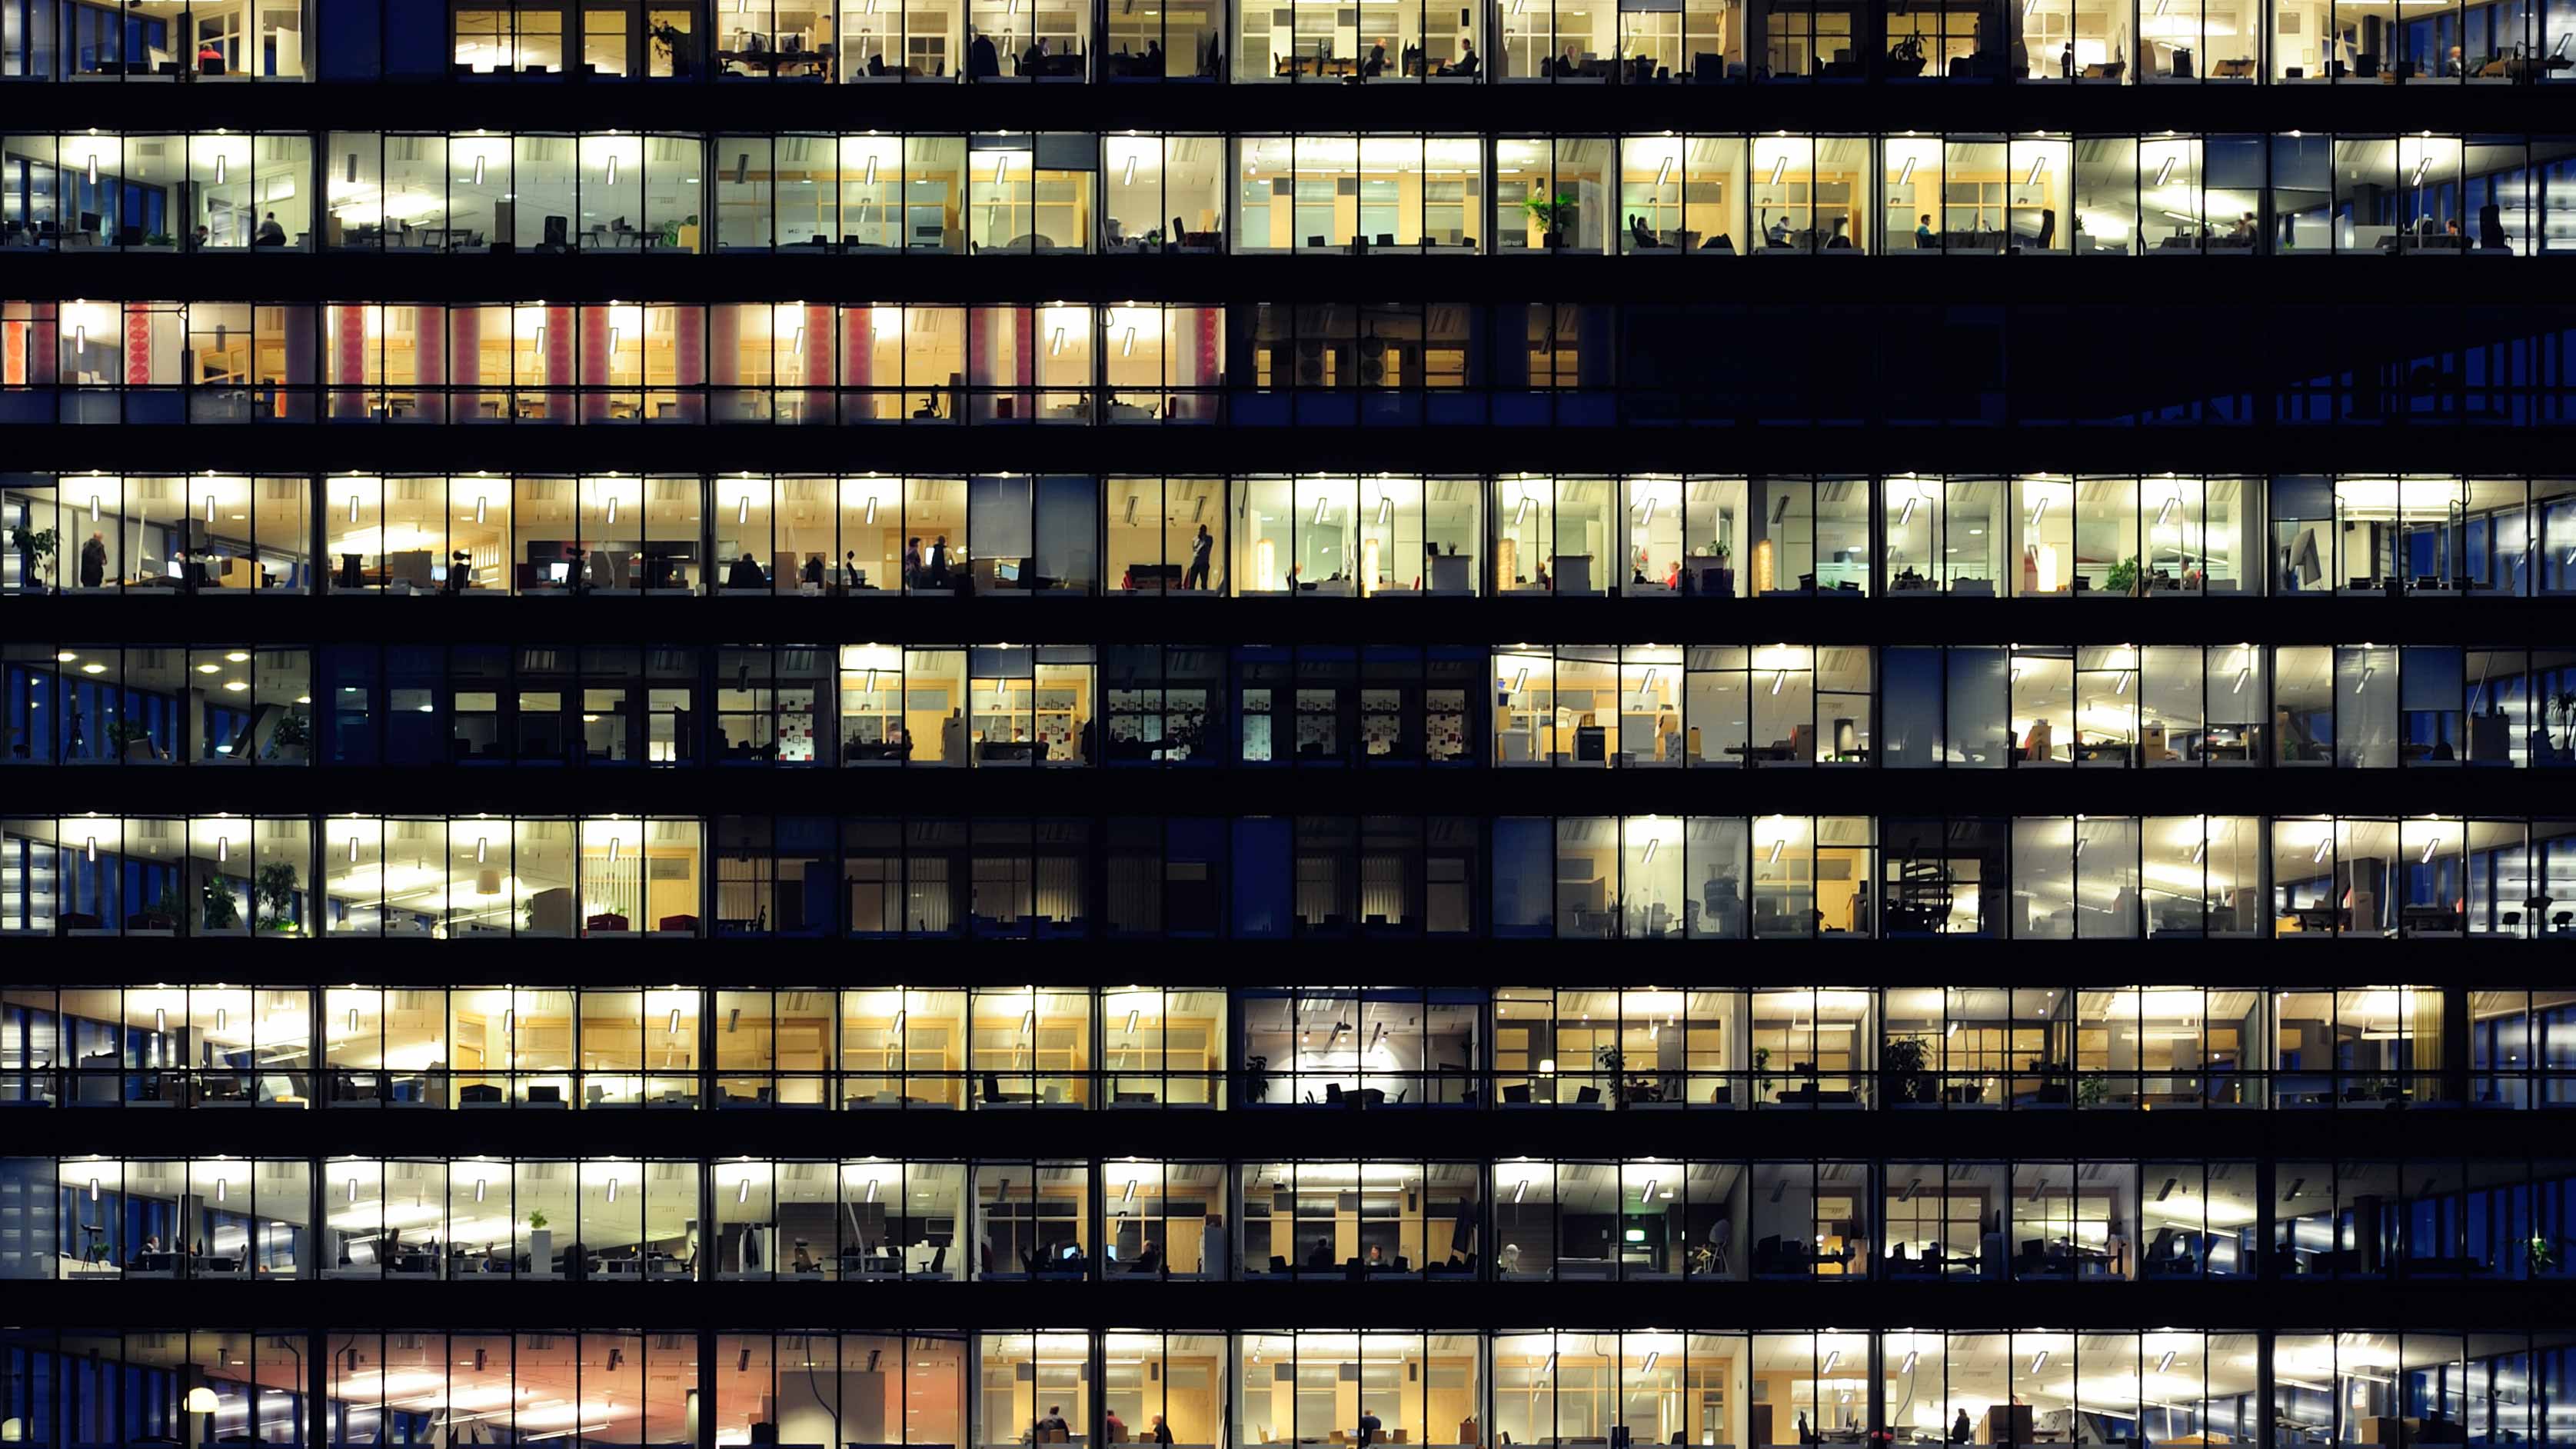 Una toma general nocturna del exterior de un edificio de oficinas corporativas, donde están iluminadas la mitad de las ventanas.